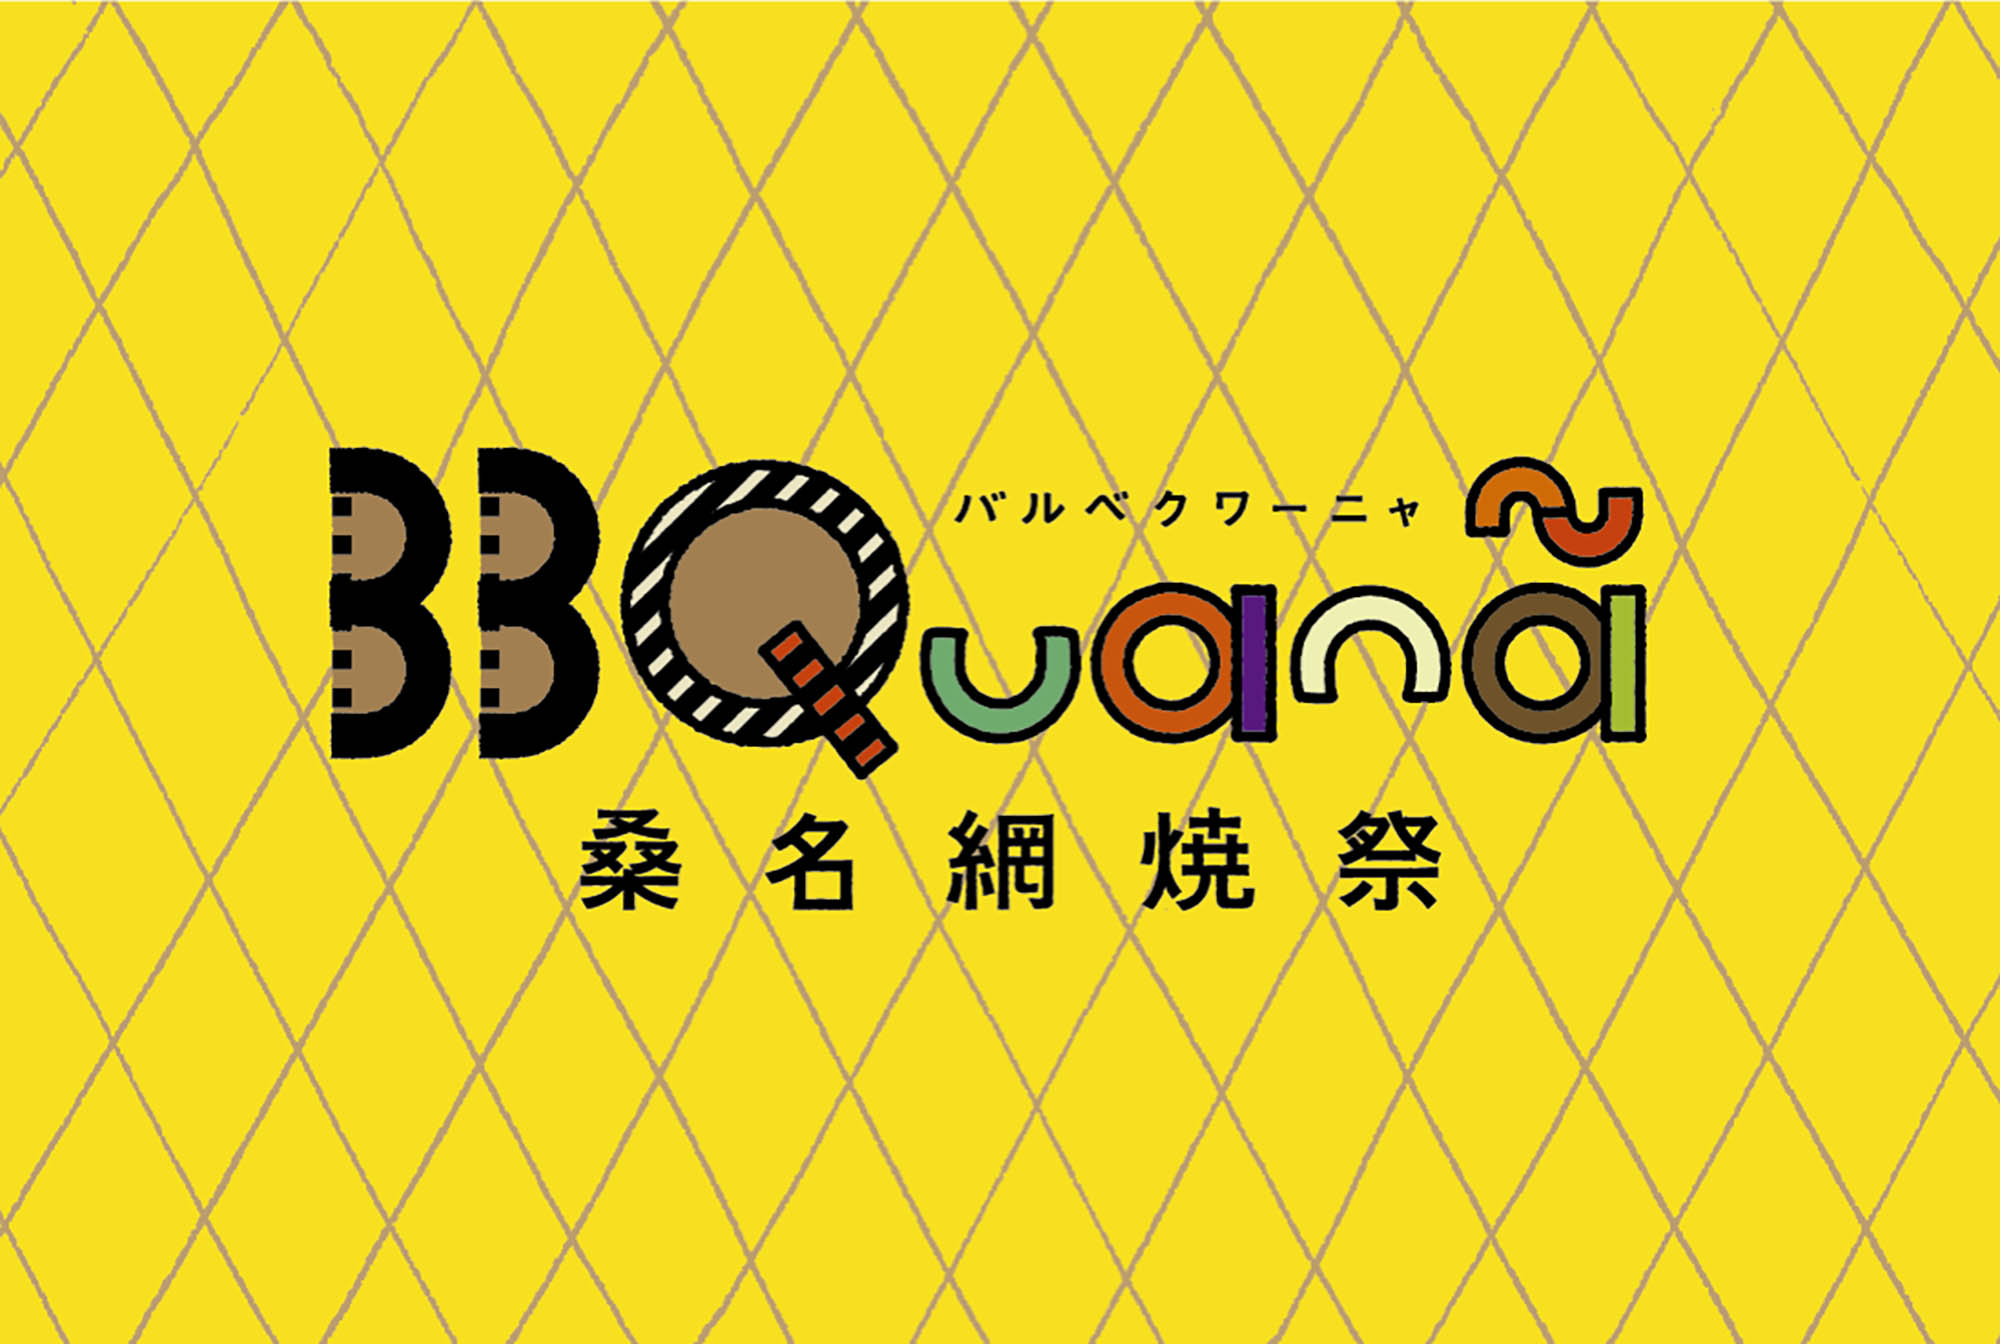 BBQuana – 桑名網焼祭｜横尾美杉 アートディレクター 